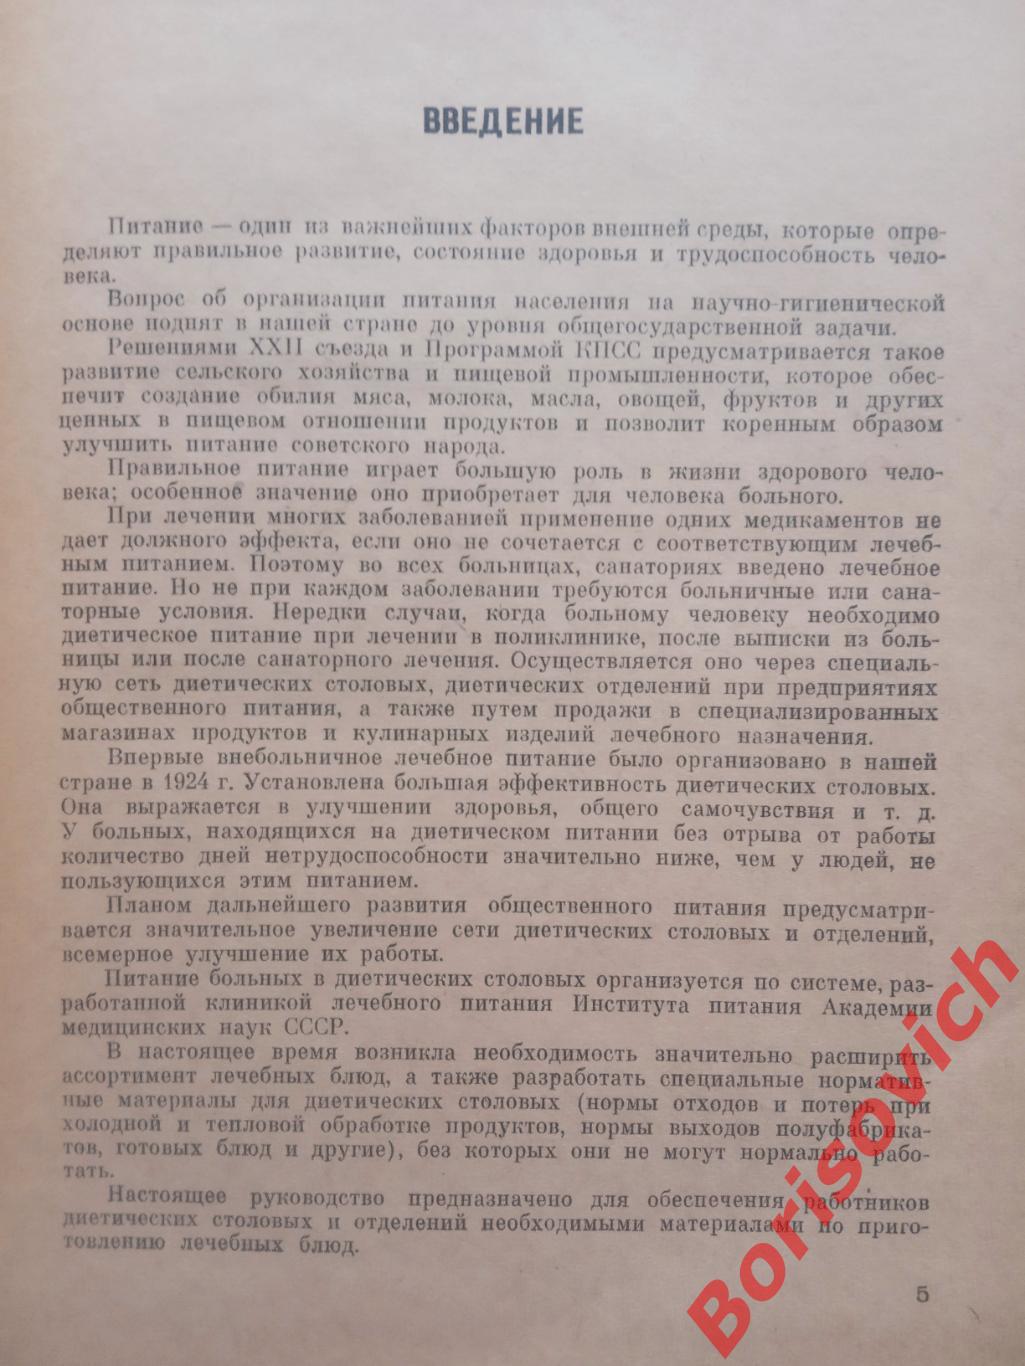 Диетическое питание в столовых Сборник рецептур Москва 1962 г 264 страницы 1